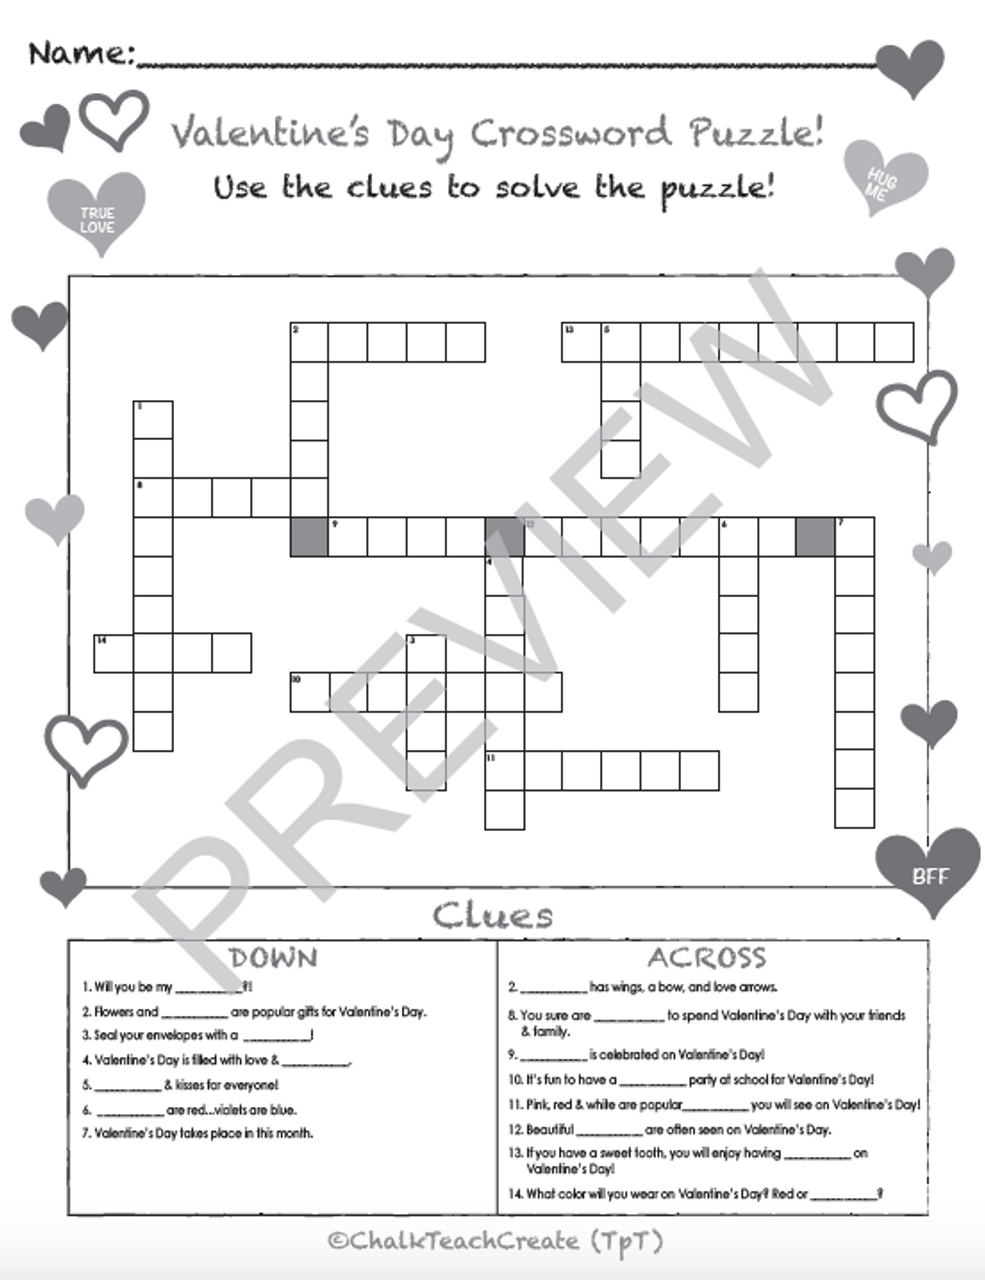 Valentines day crossword puzzle